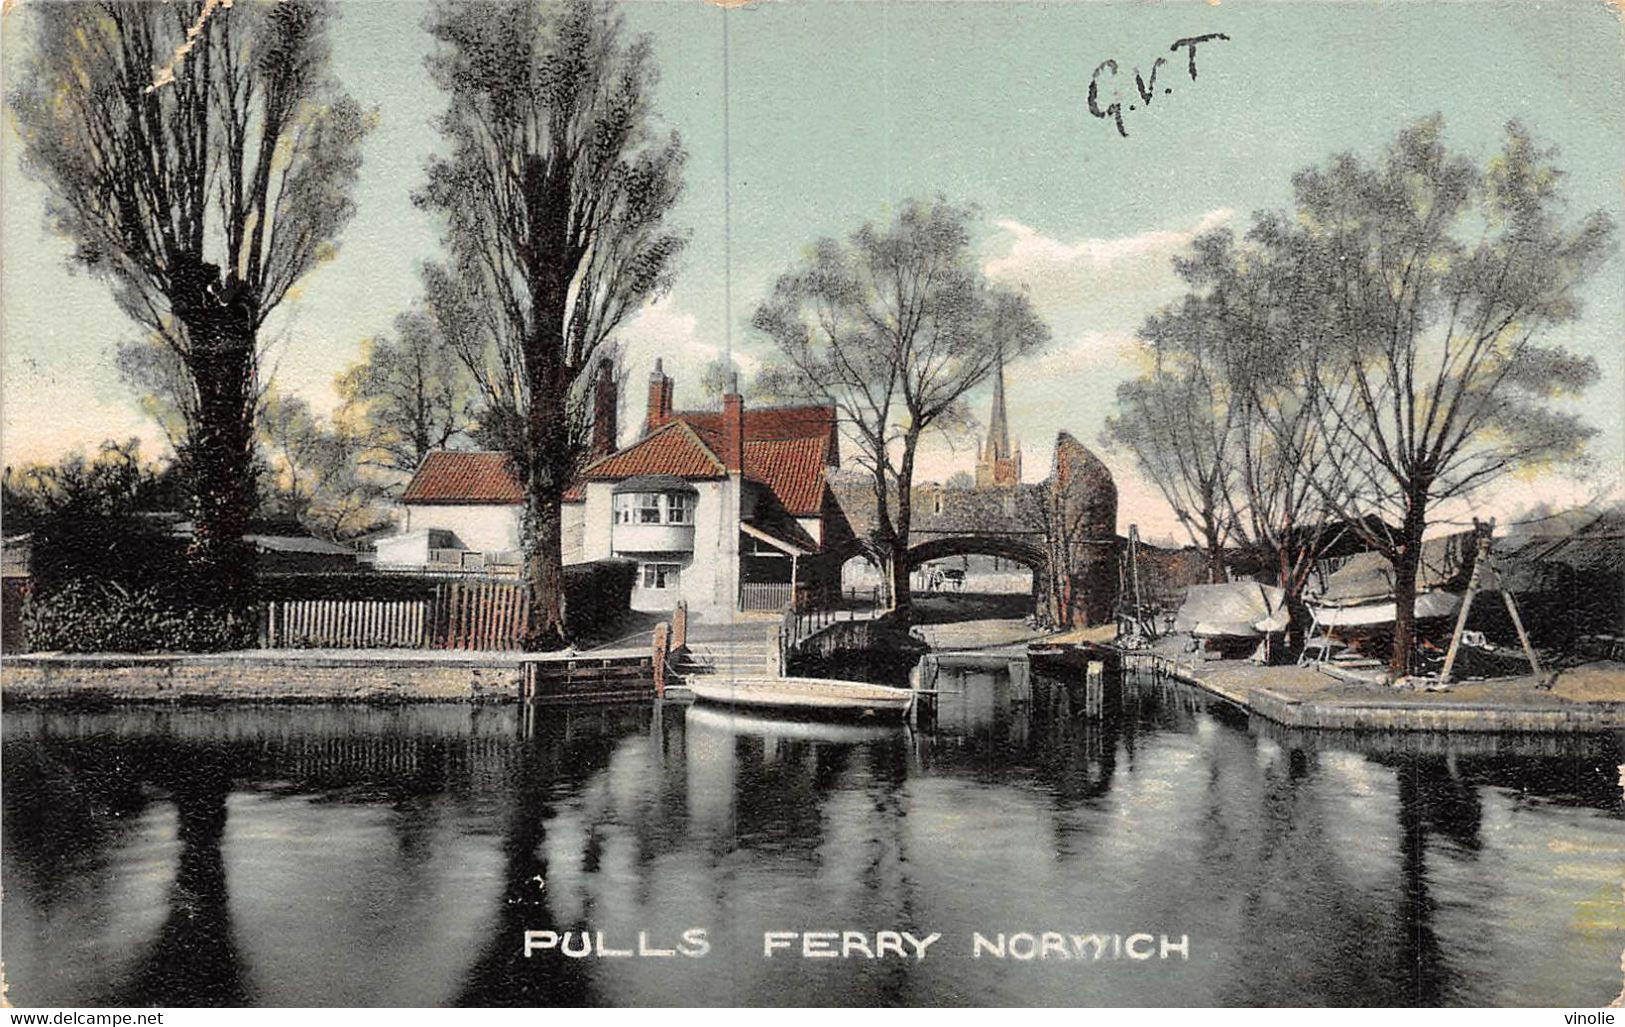 22-1498 : PULLS FERRY NORWICH. - Norwich